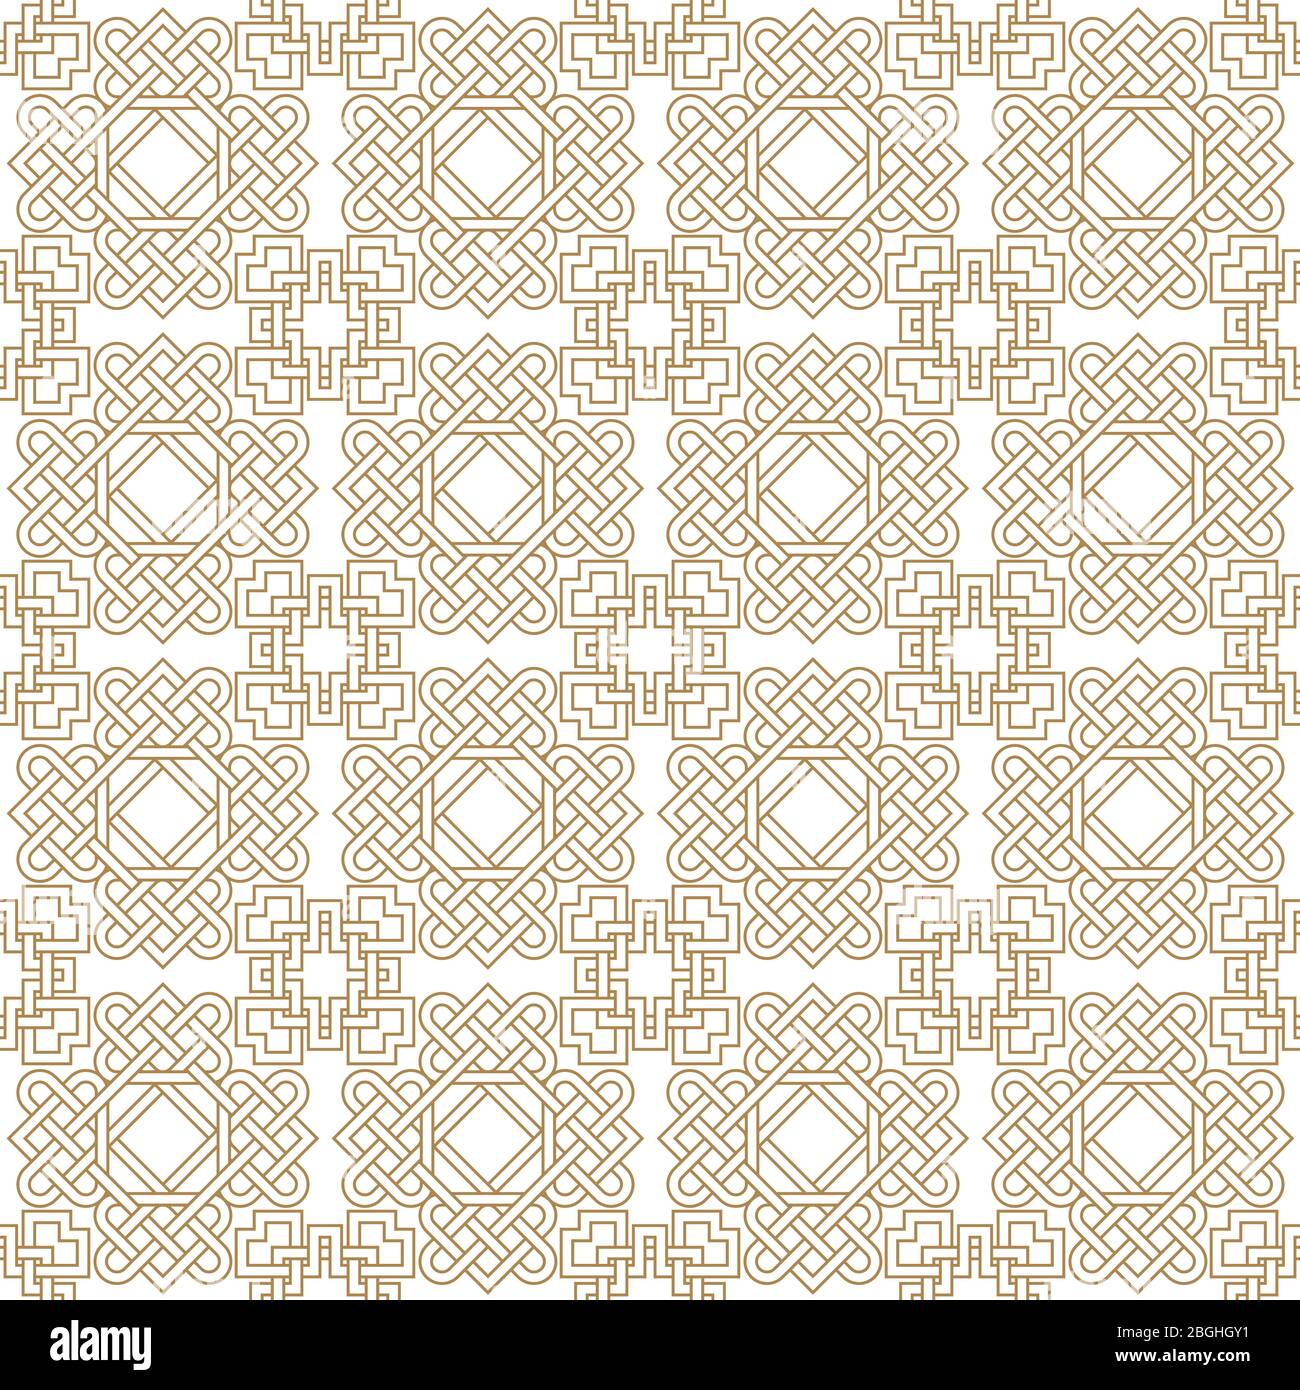 Abstrakt asiatische nahtlose Muster Hintergrund mit keltischen Knoten. Vektorgrafik Stock Vektor